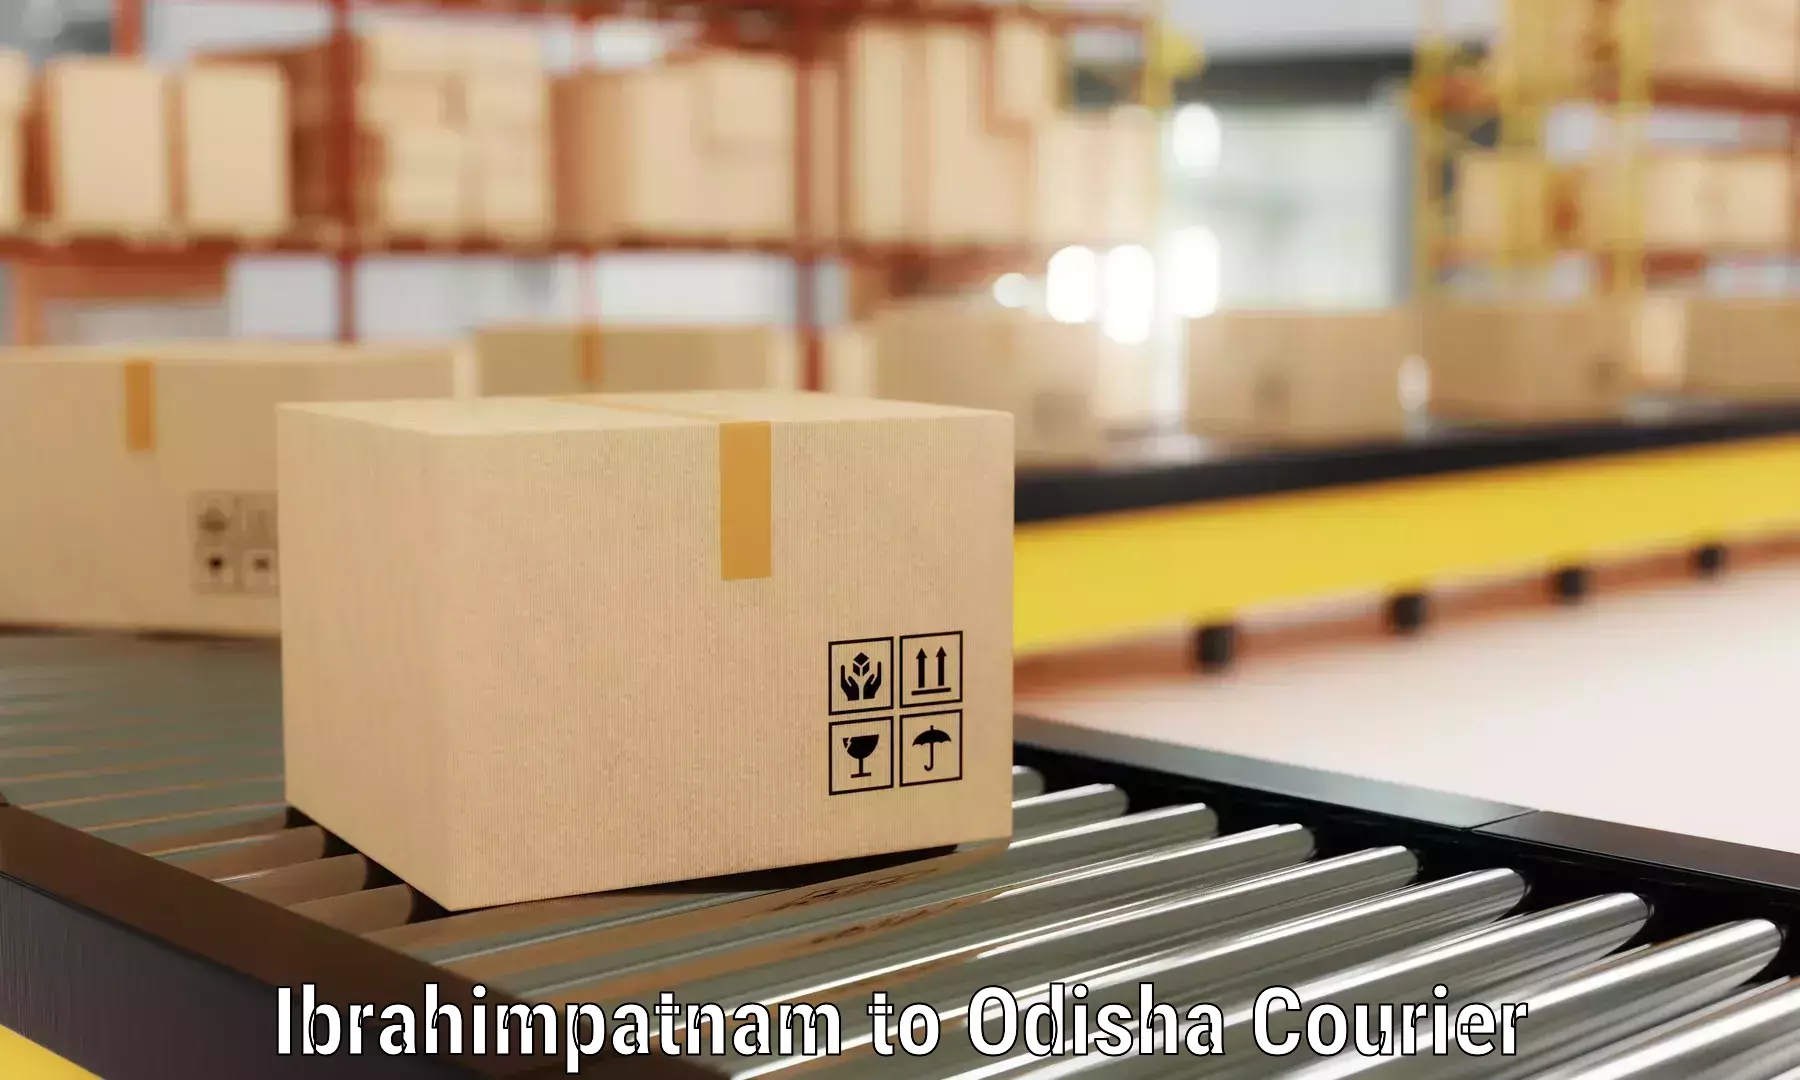 Moving and storage services Ibrahimpatnam to Bangriposi